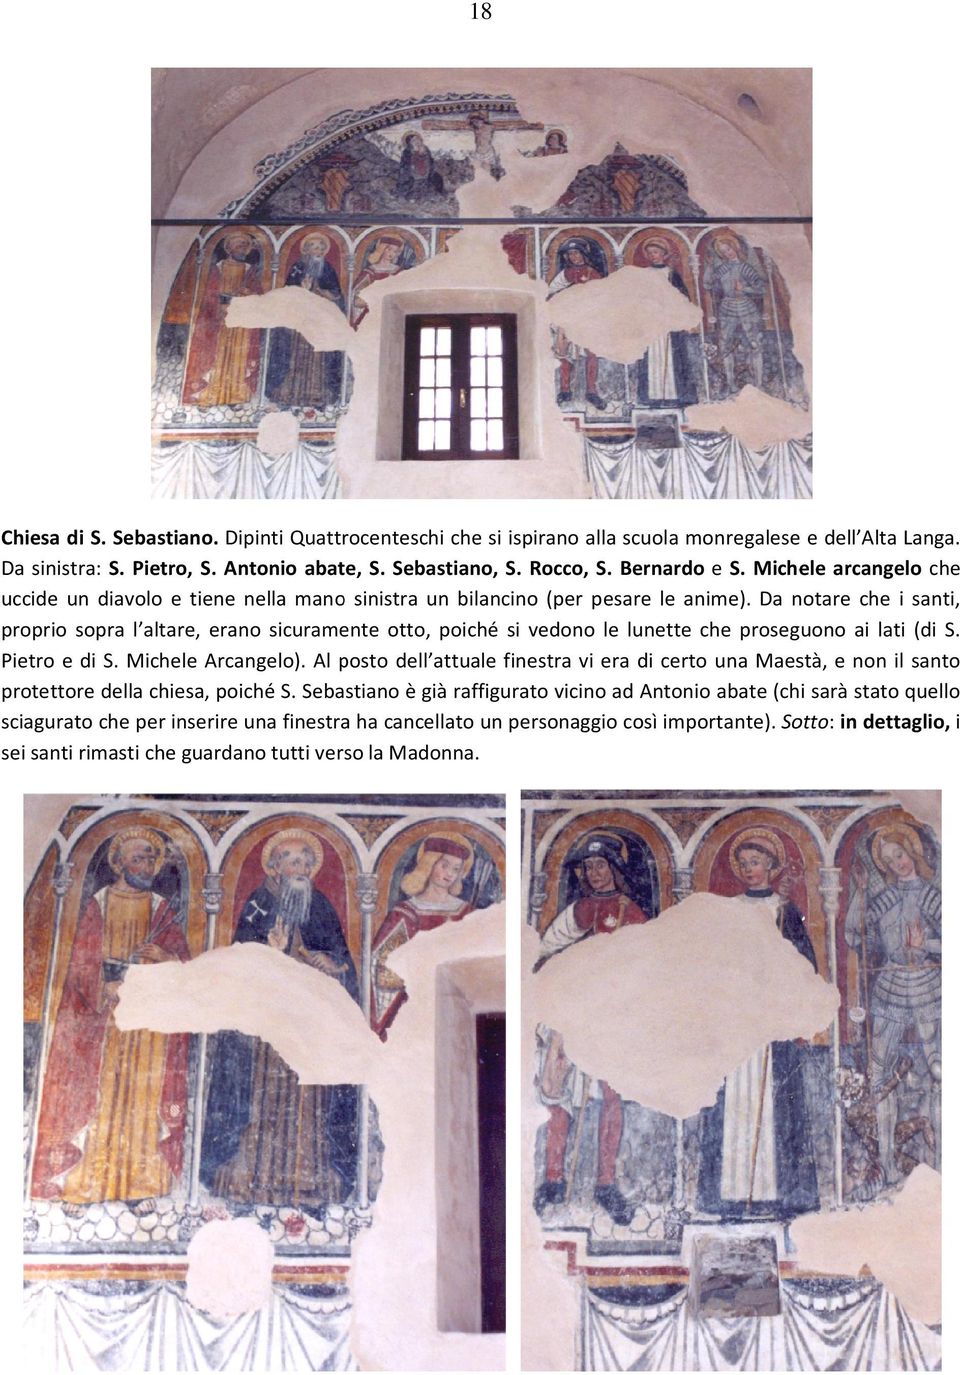 Da notare che i santi, proprio sopra l altare, erano sicuramente otto, poiché si vedono le lunette che proseguono ai lati (di S. Pietro e di S. Michele Arcangelo).